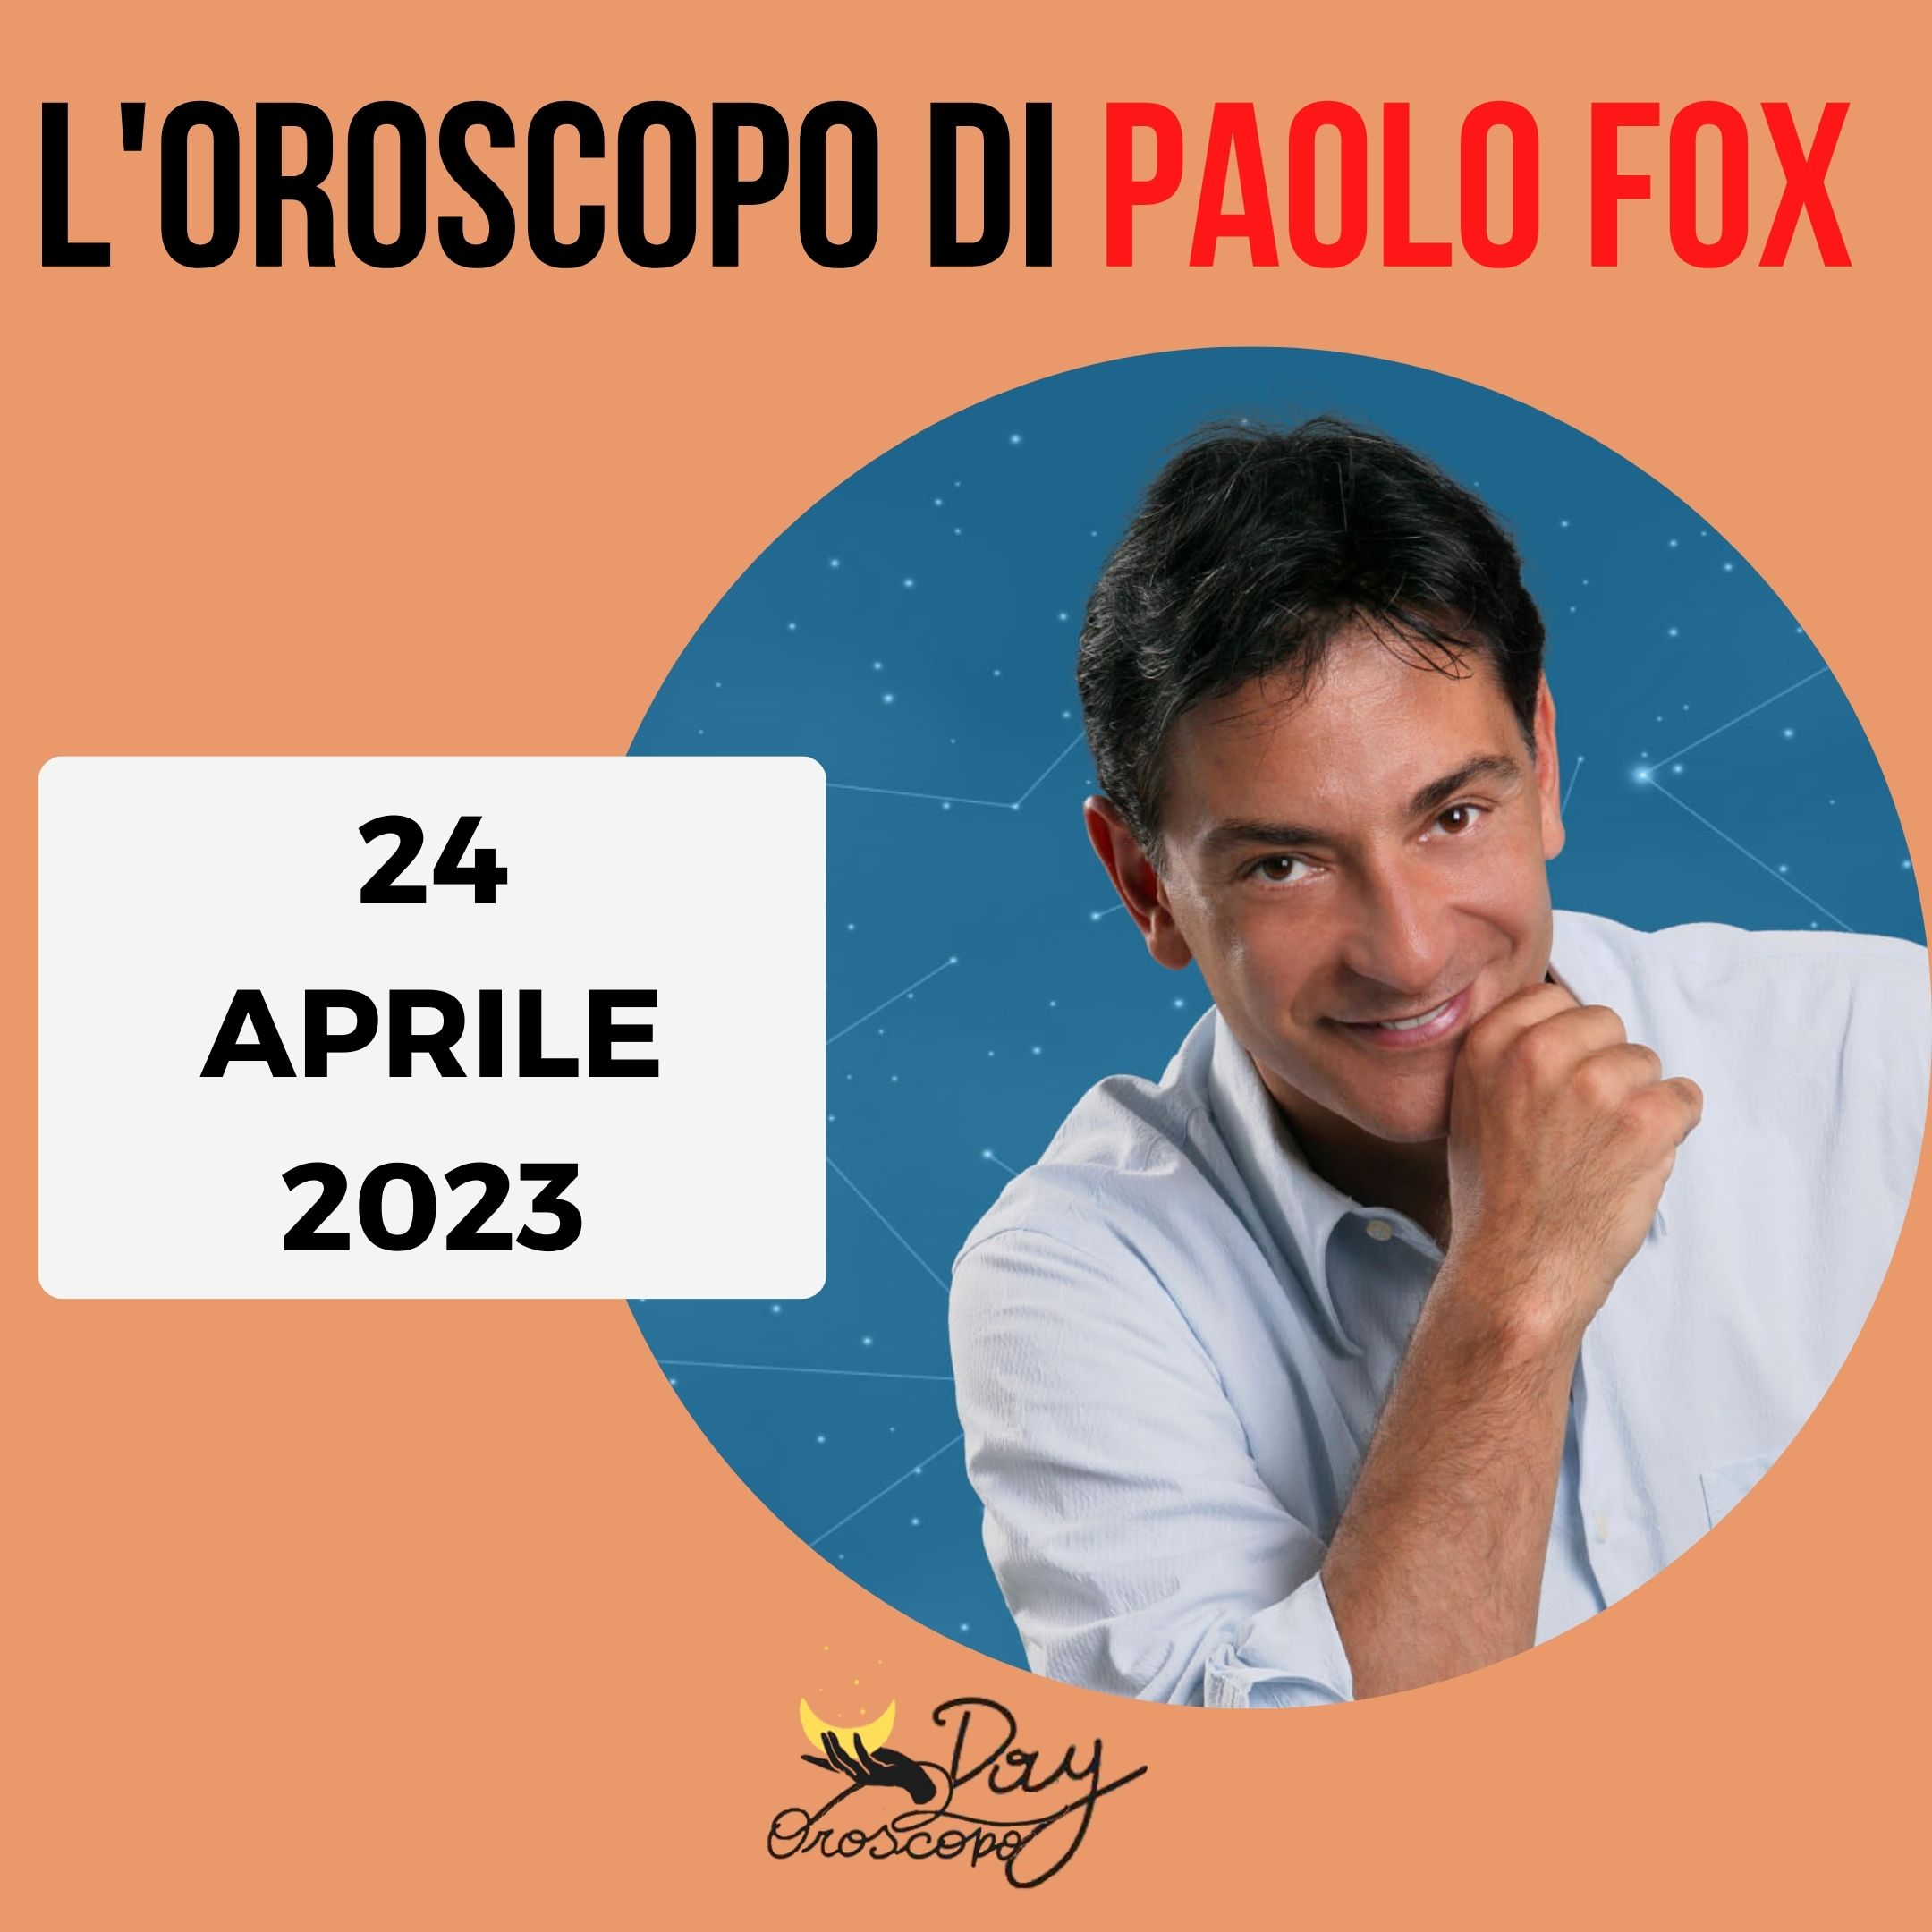 Oroscopo oggi domani Paolo Fox 24 aprile 2023